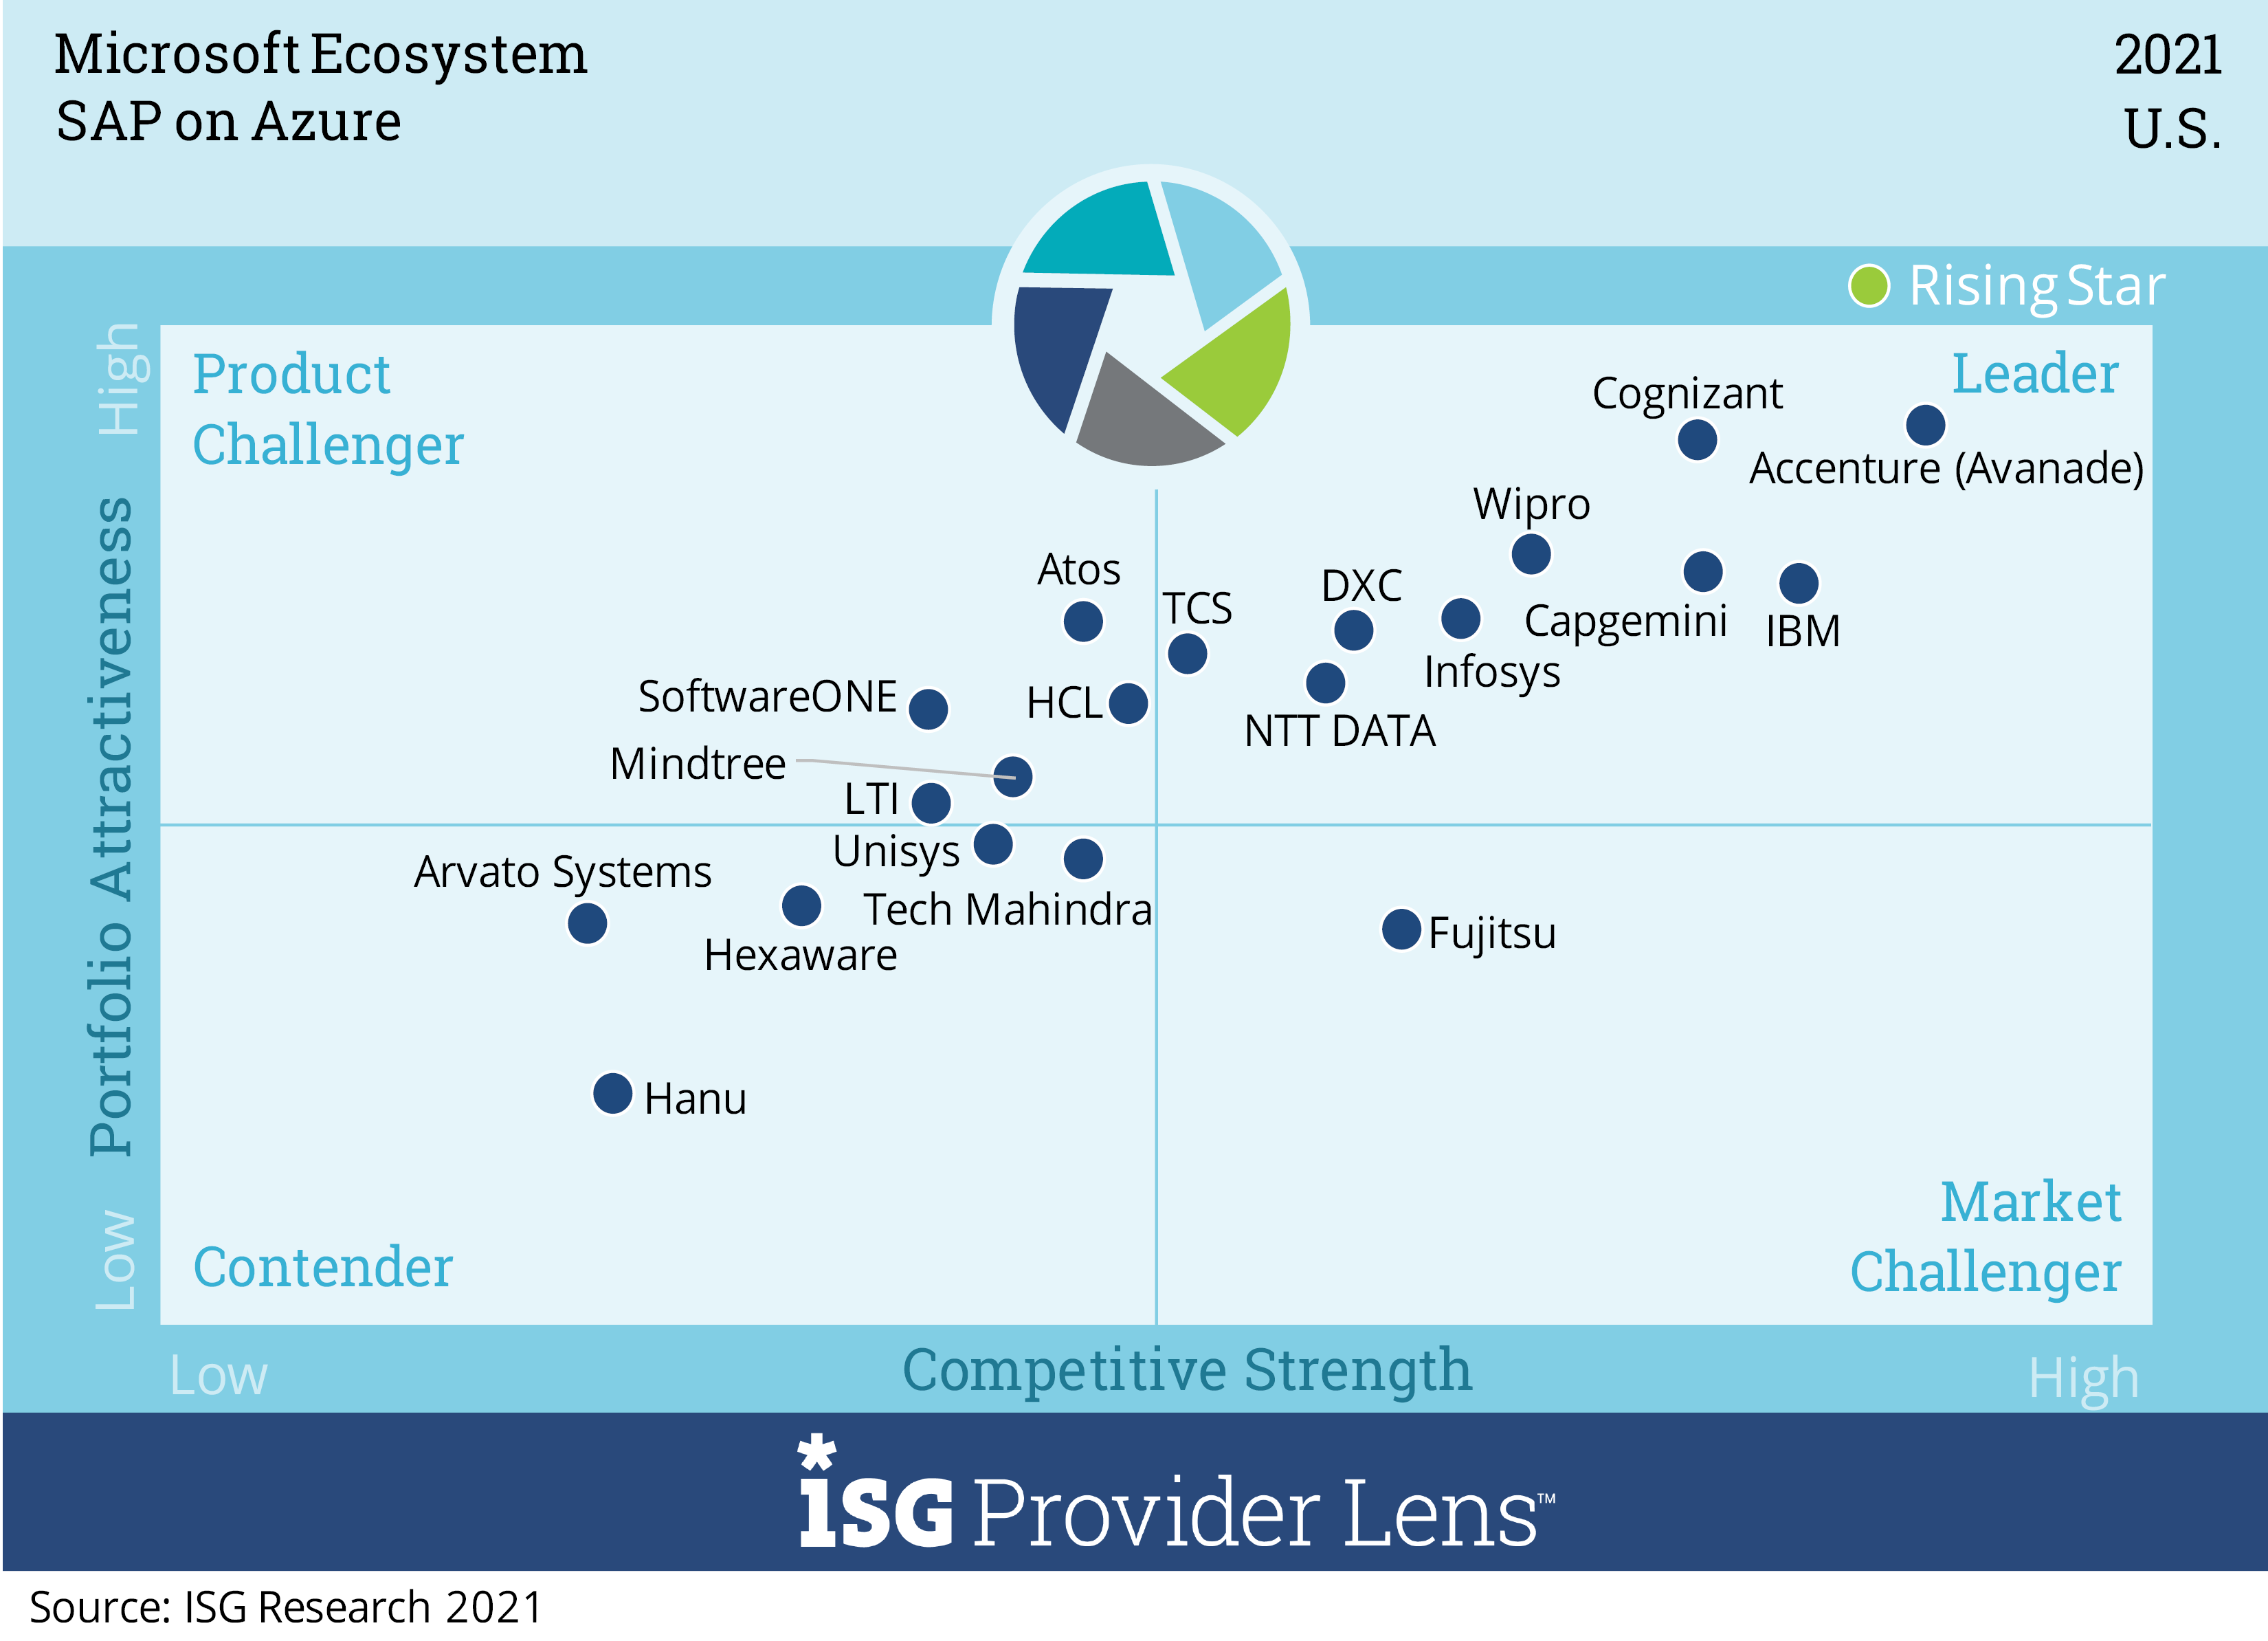 Wipro se posiciona como un "líder" para SAP en Azure en ISG Provider LensTM, Microsoft Ecosystem, U.S. 2021